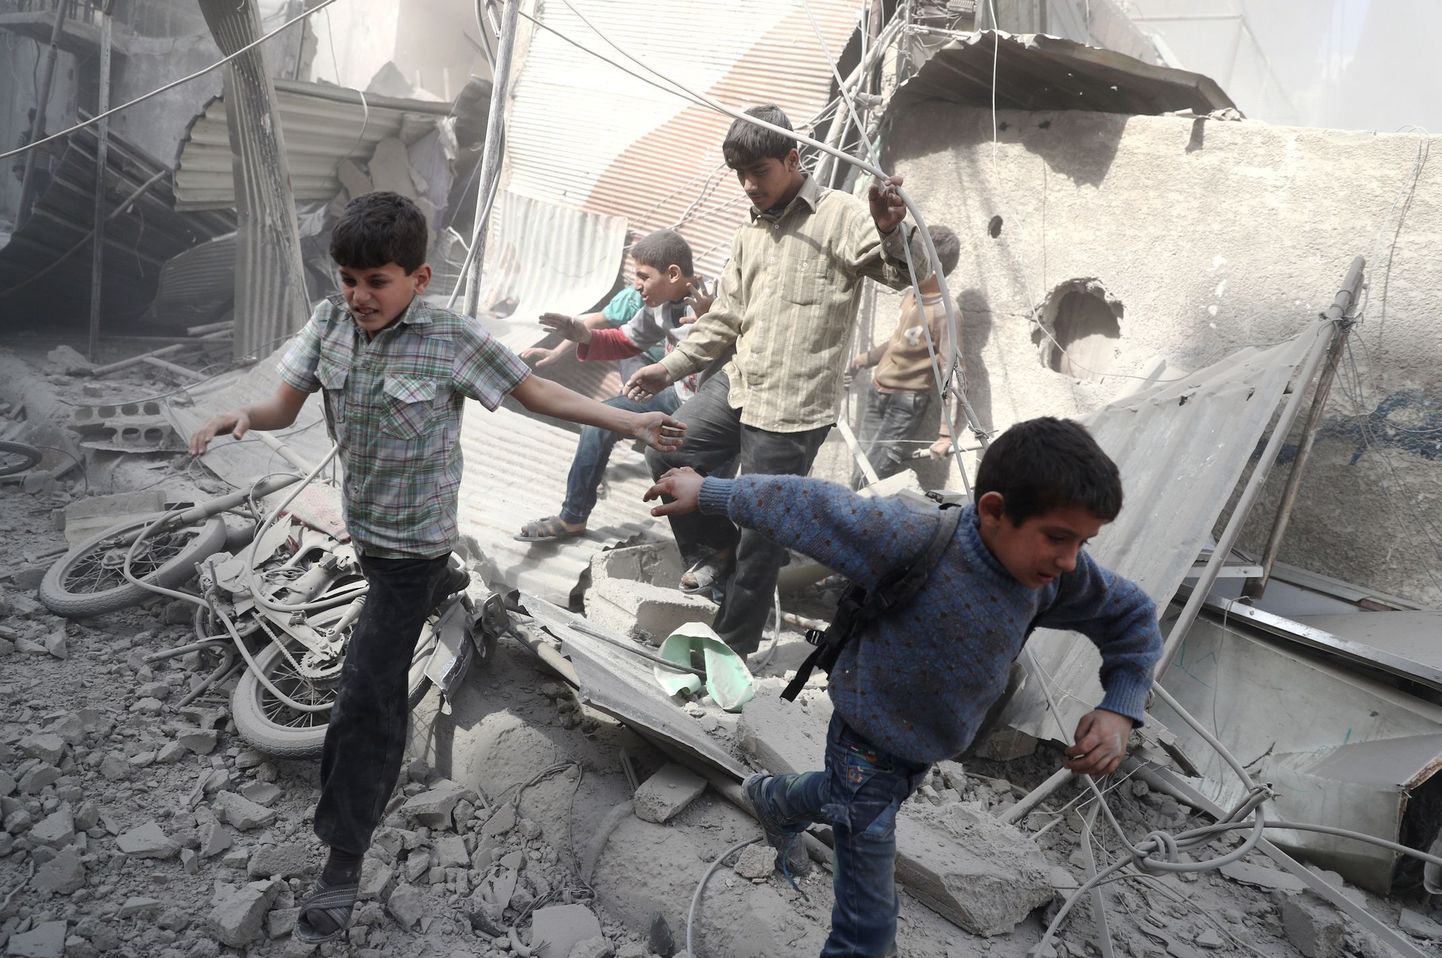 В Сирии в результате авиаудара погибли 22 ребенка и шесть учителей, сообщило ЮНИСЕФ.